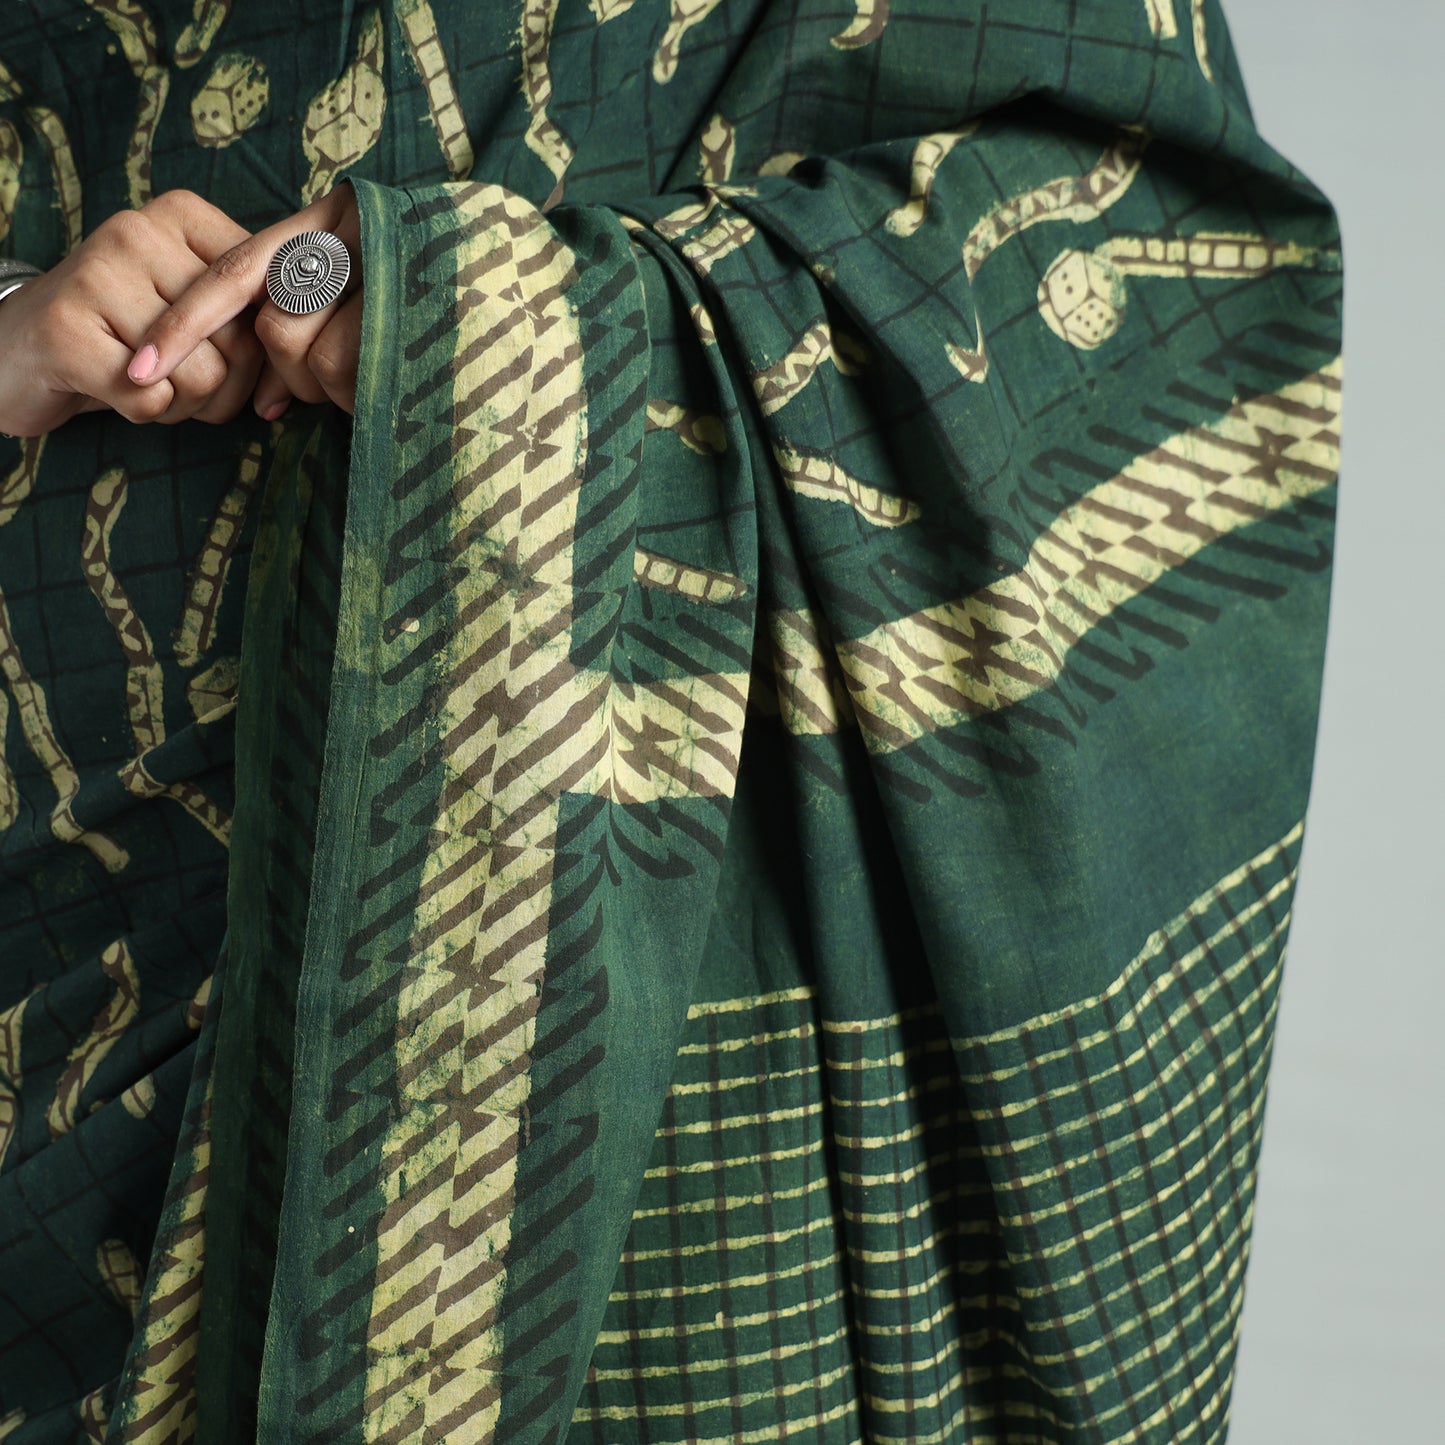 Green - Bindaas Art Block Printed Natural Dyed Cotton Saree 30